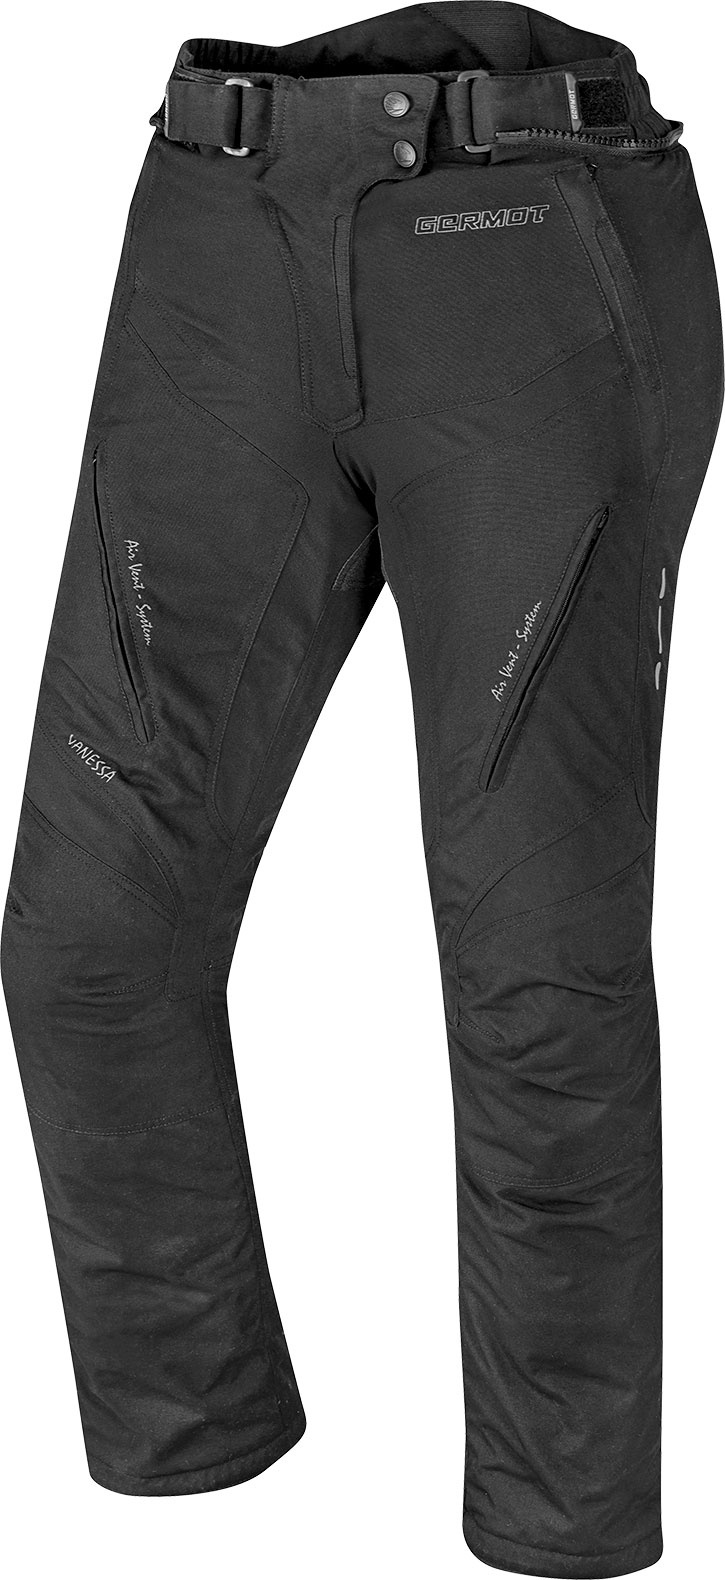 Germot Vanessa, textile Jeans/Pantalons étanches - Noir/Gris - 44